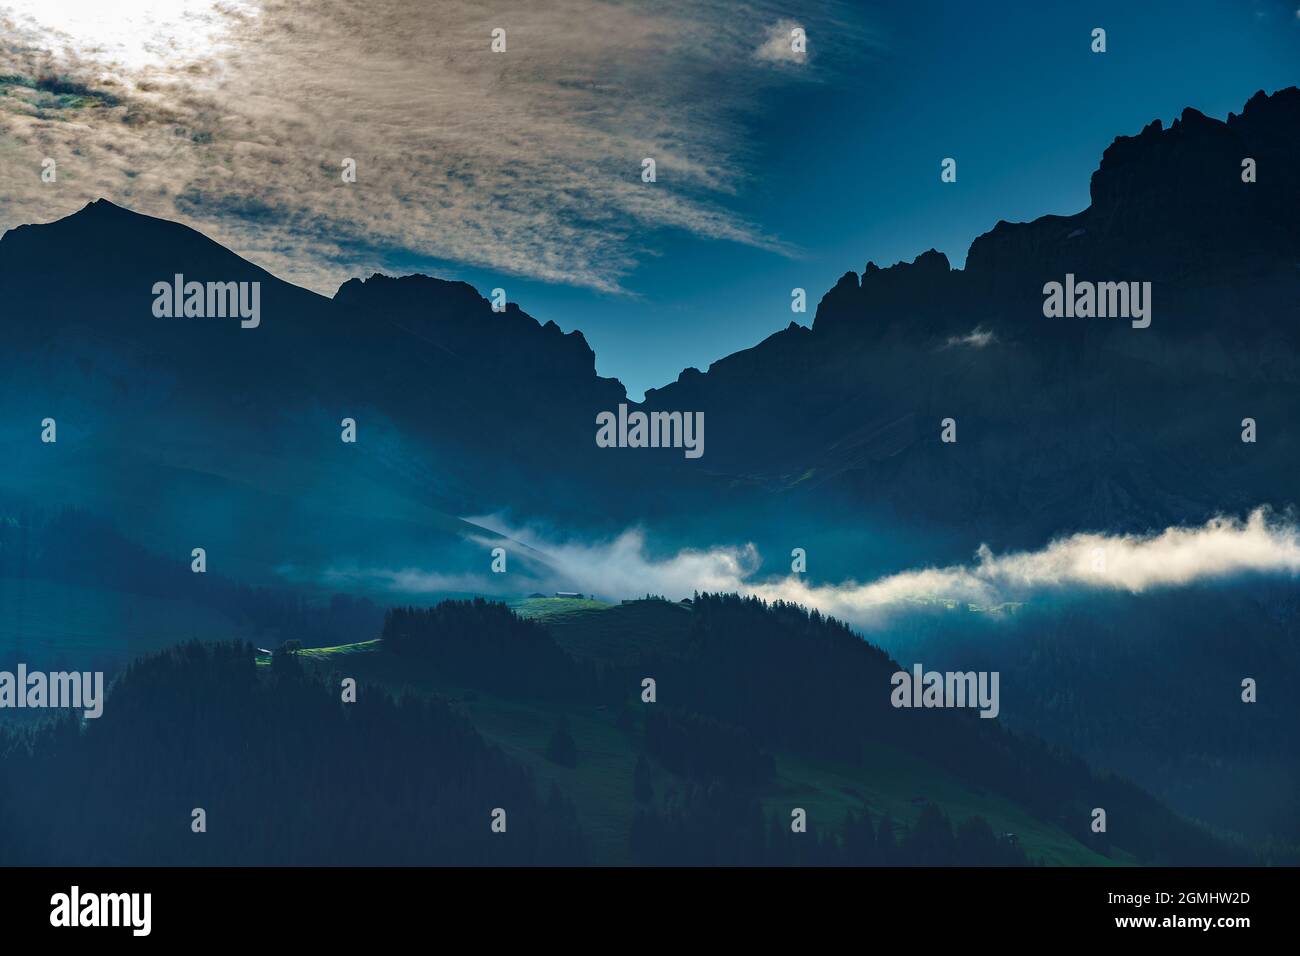 Beim Sonnenaufgang beleuchtete Alp mit einer Nebelbank in Adelboden, im Hintergrund Bonderspitze und Grosser Lohner, Berner Oberland, Schweiz Foto Stock